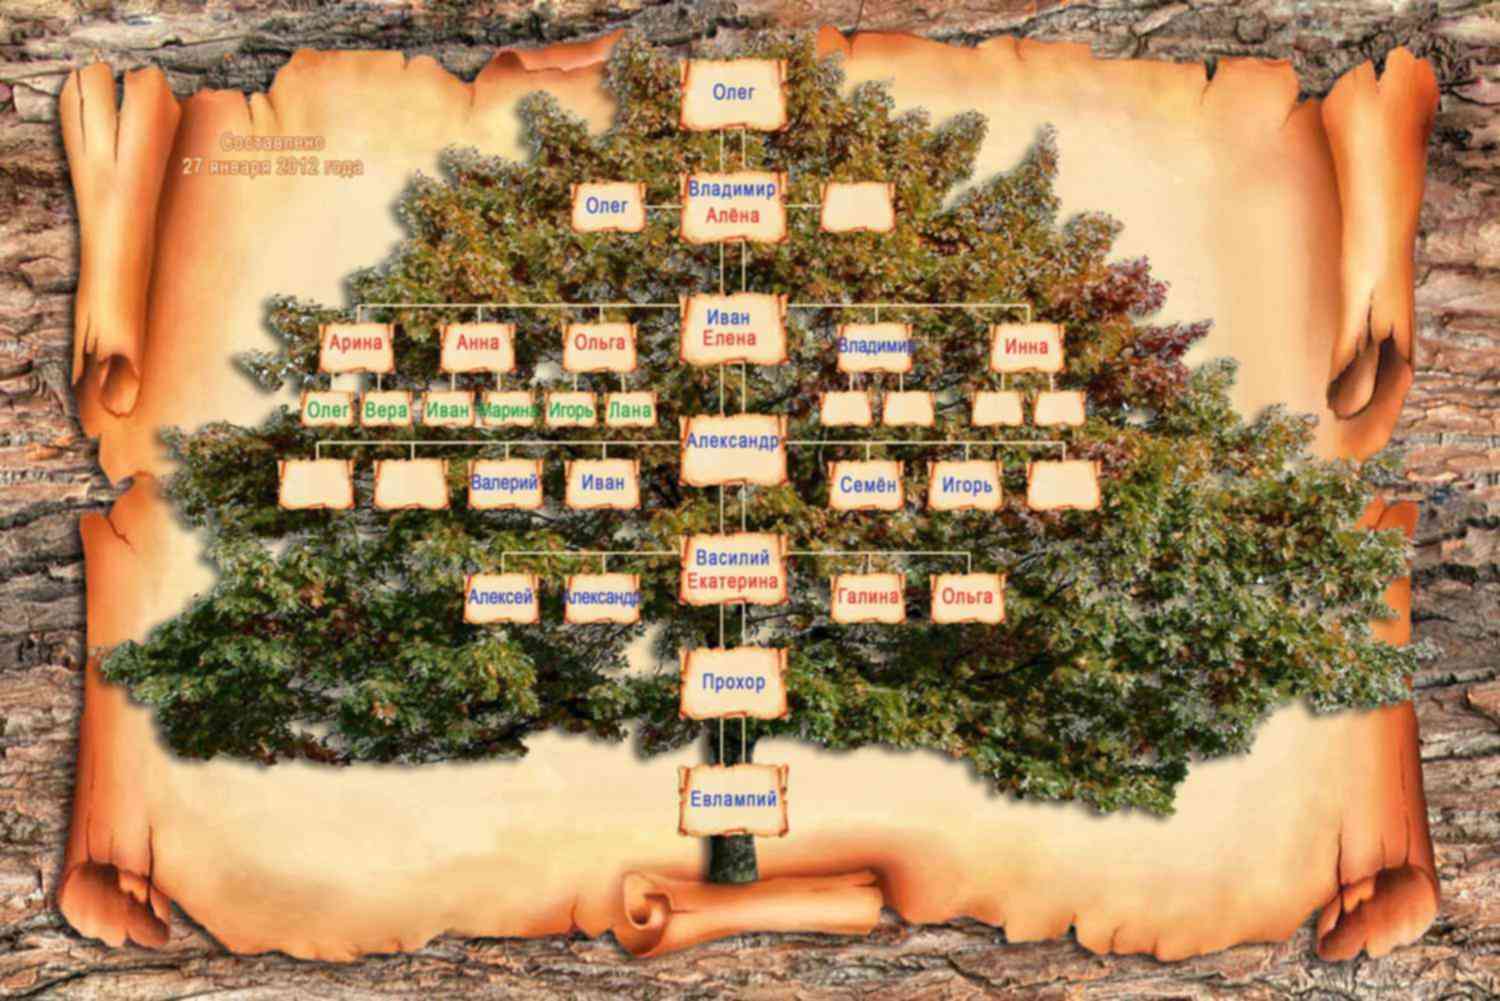 Родословное дерево. Родословная дерево. Генеалогическое Древо семьи. Составление родословного дерева.